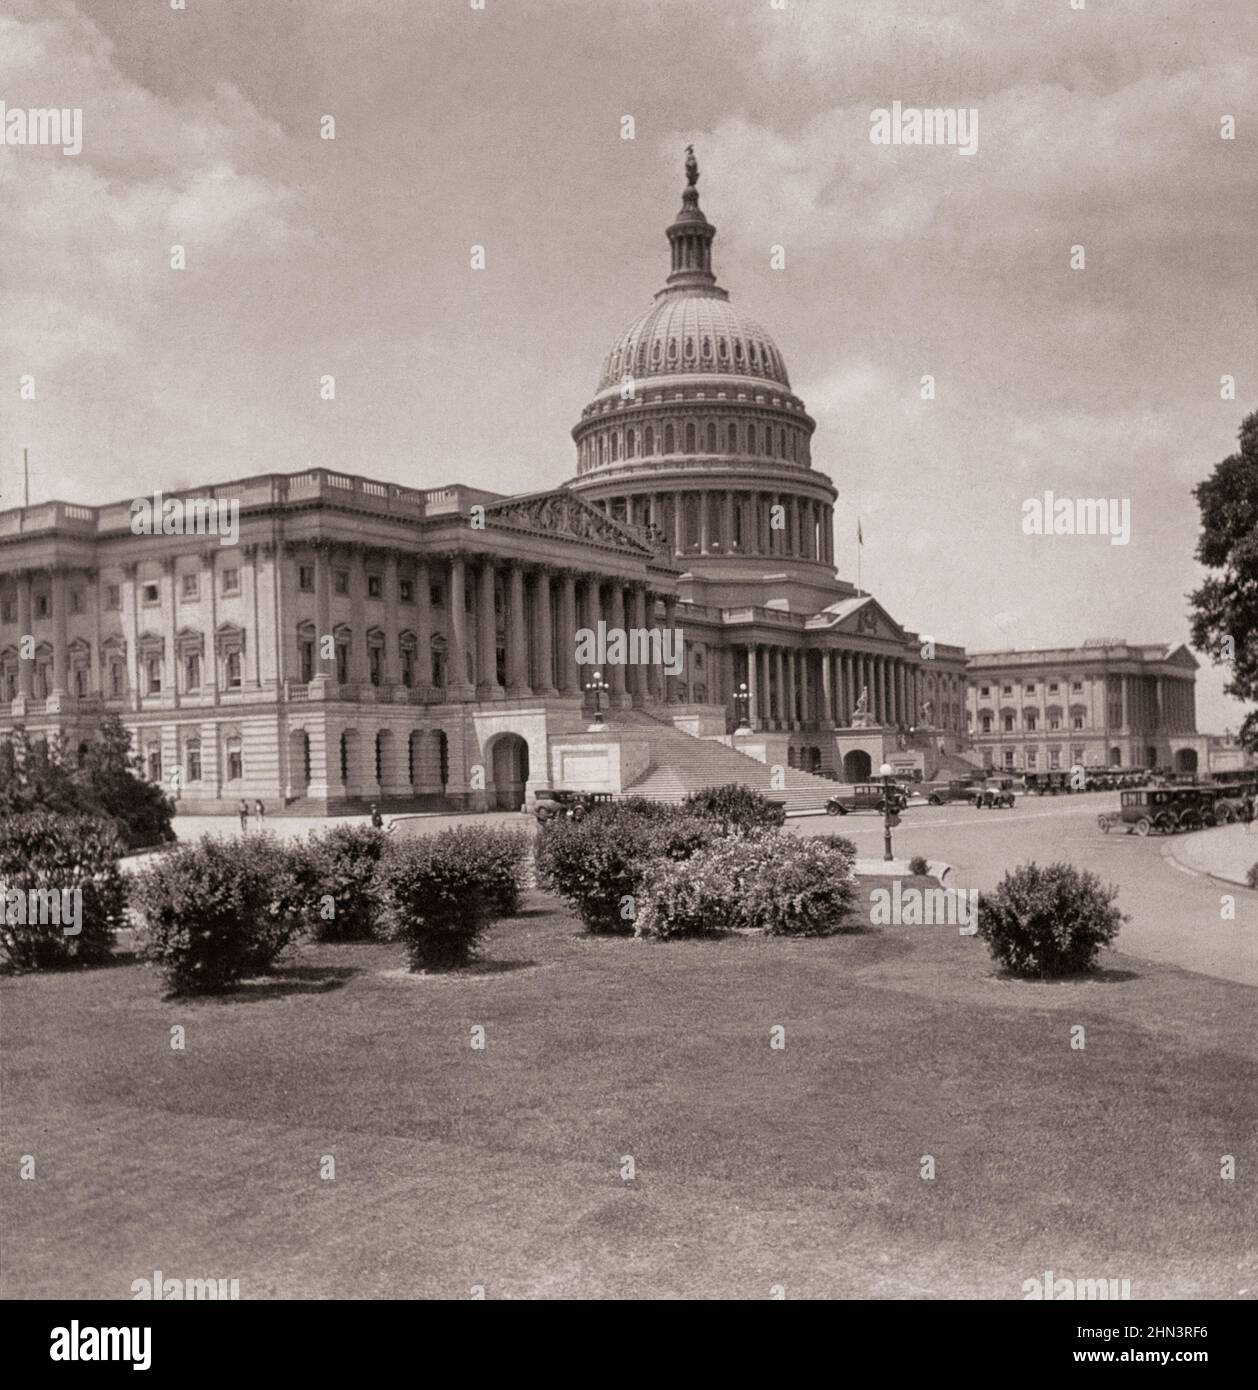 Foto vintage del Capitolio de los Estados Unidos, el edificio más imponente de América, Washington, D.C., EE.UU. 1926 Foto de stock